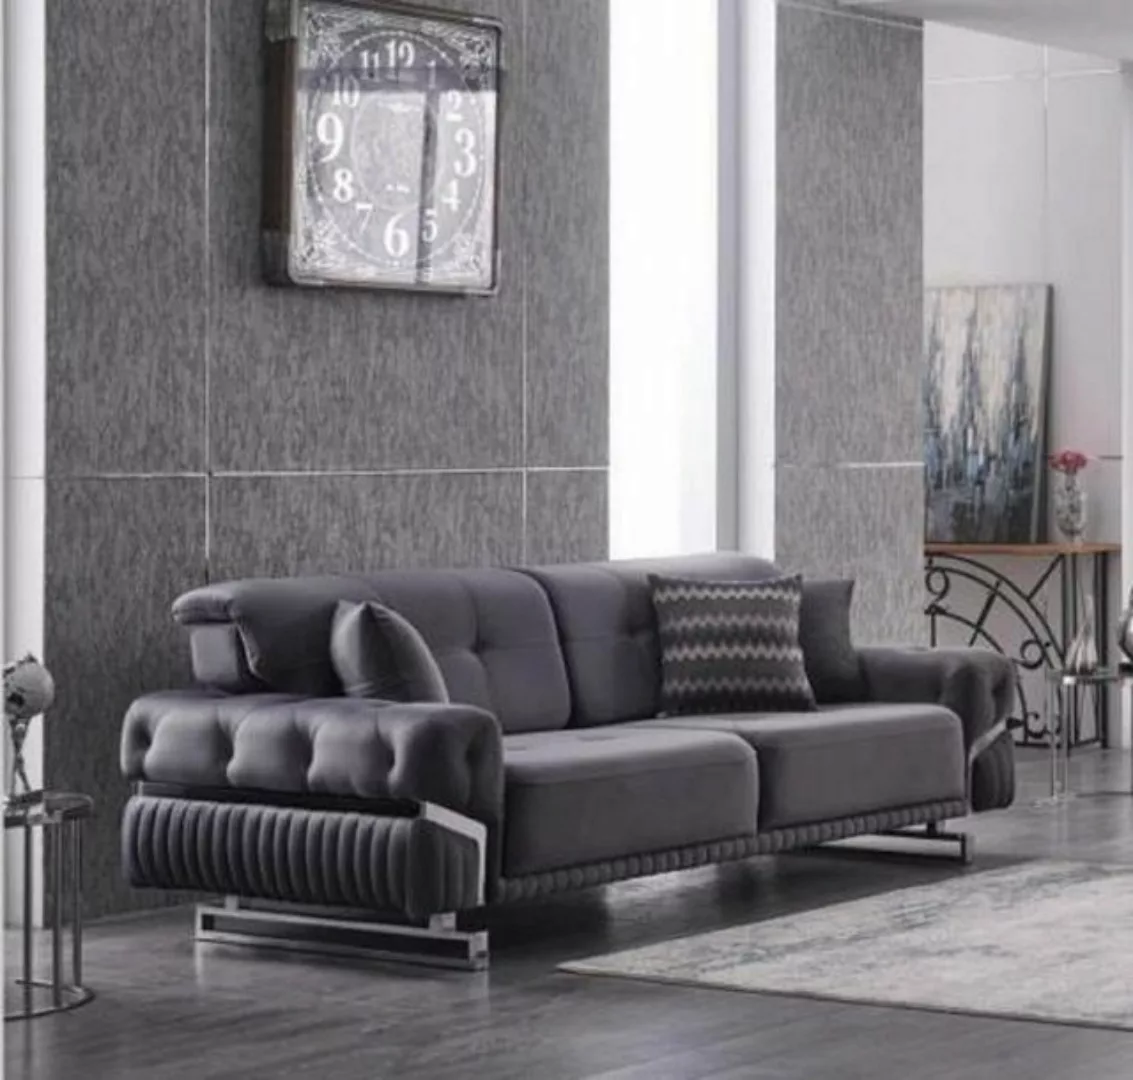 JVmoebel 3-Sitzer Graues Sofa Komplett Wohnzimmermöbel Luxus Polstergarnitu günstig online kaufen